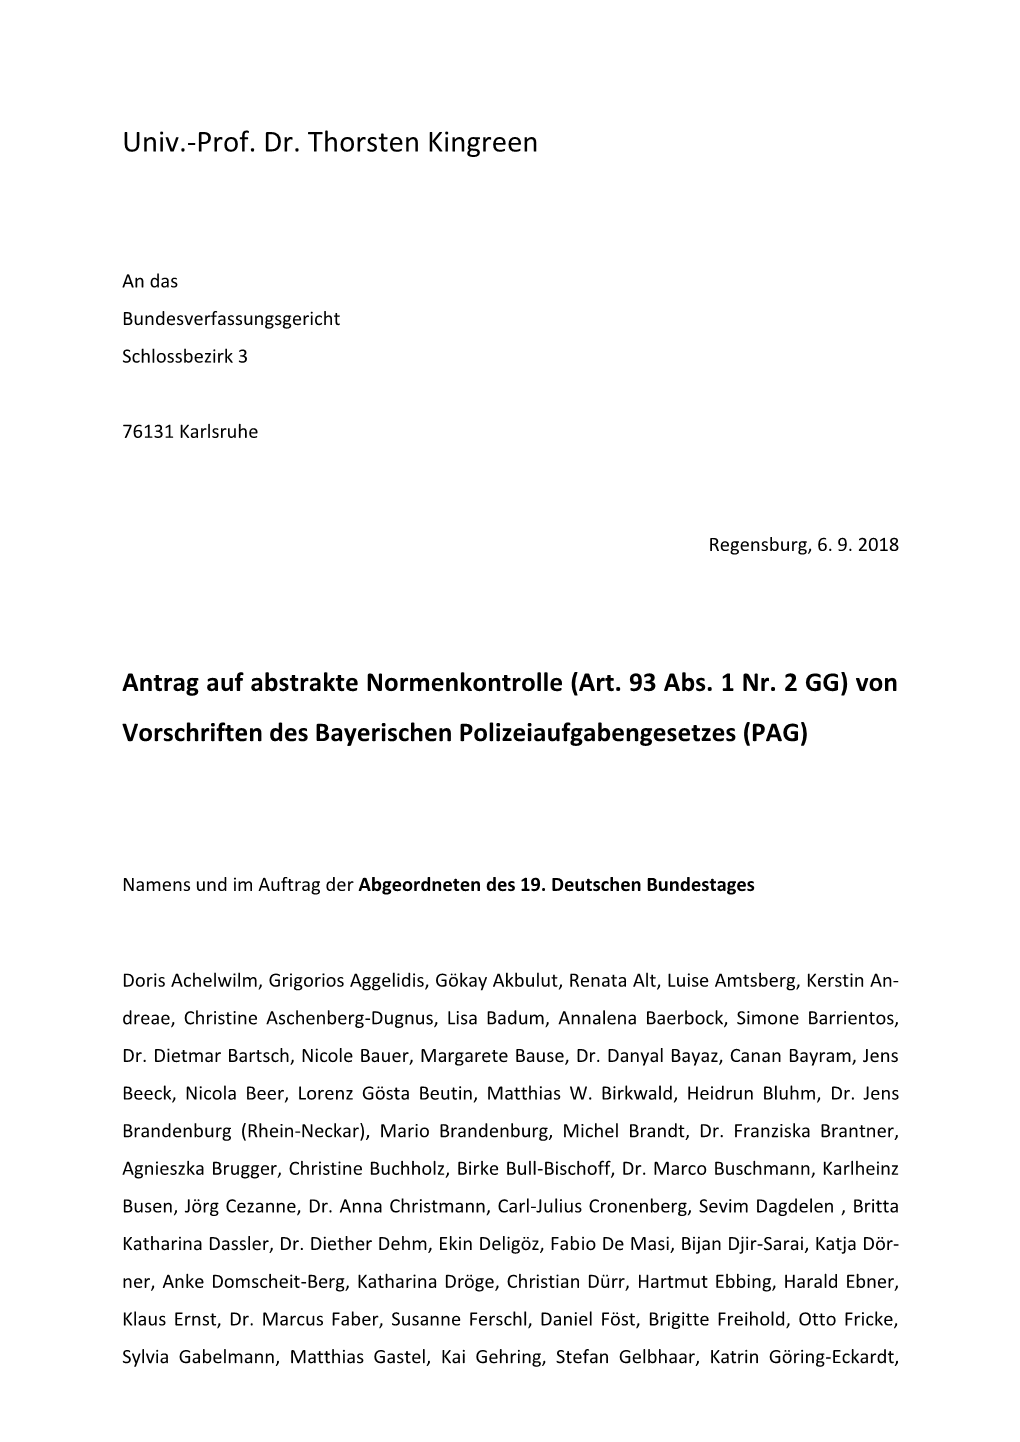 Antrag Auf Abstrakte Normenkontrolle (Art. 93 Abs. 1 Nr. 2 GG) Von Vorschriften Des Bayerischen Polizeiaufgabengesetzes (PAG)